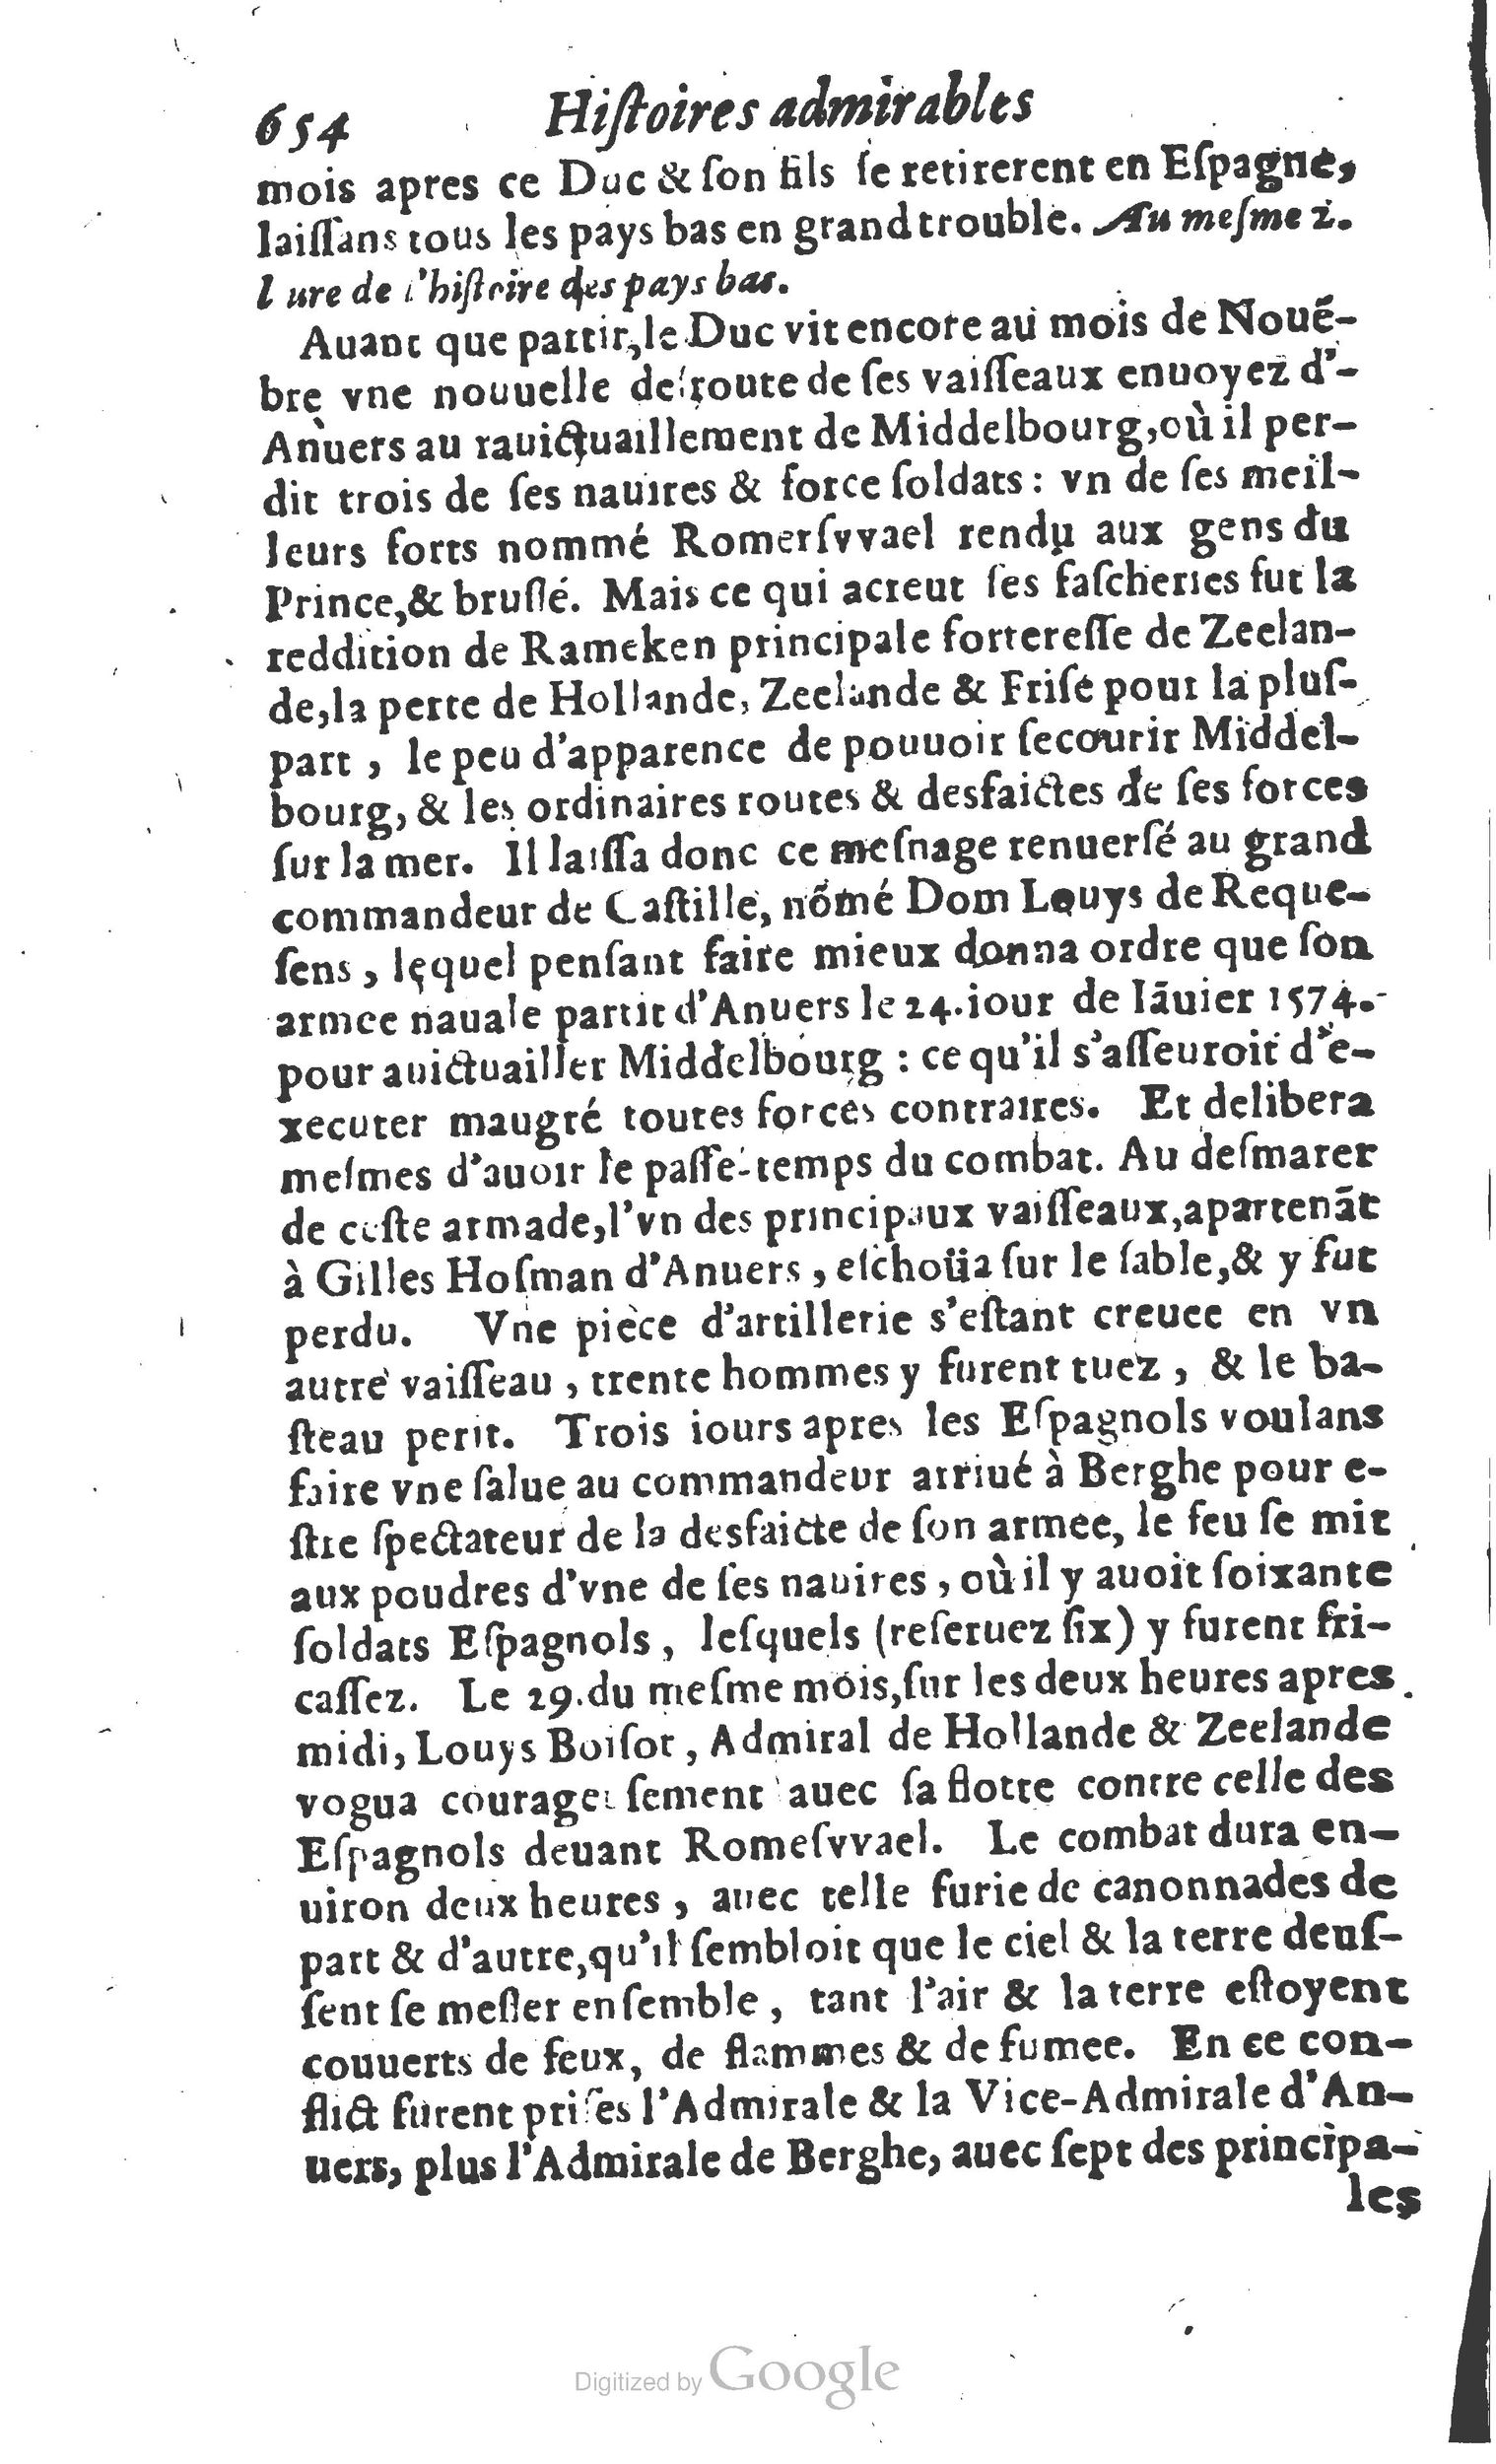 1610 Trésor d’histoires admirables et mémorables de nostre temps Marceau Princeton_Page_0675.jpg